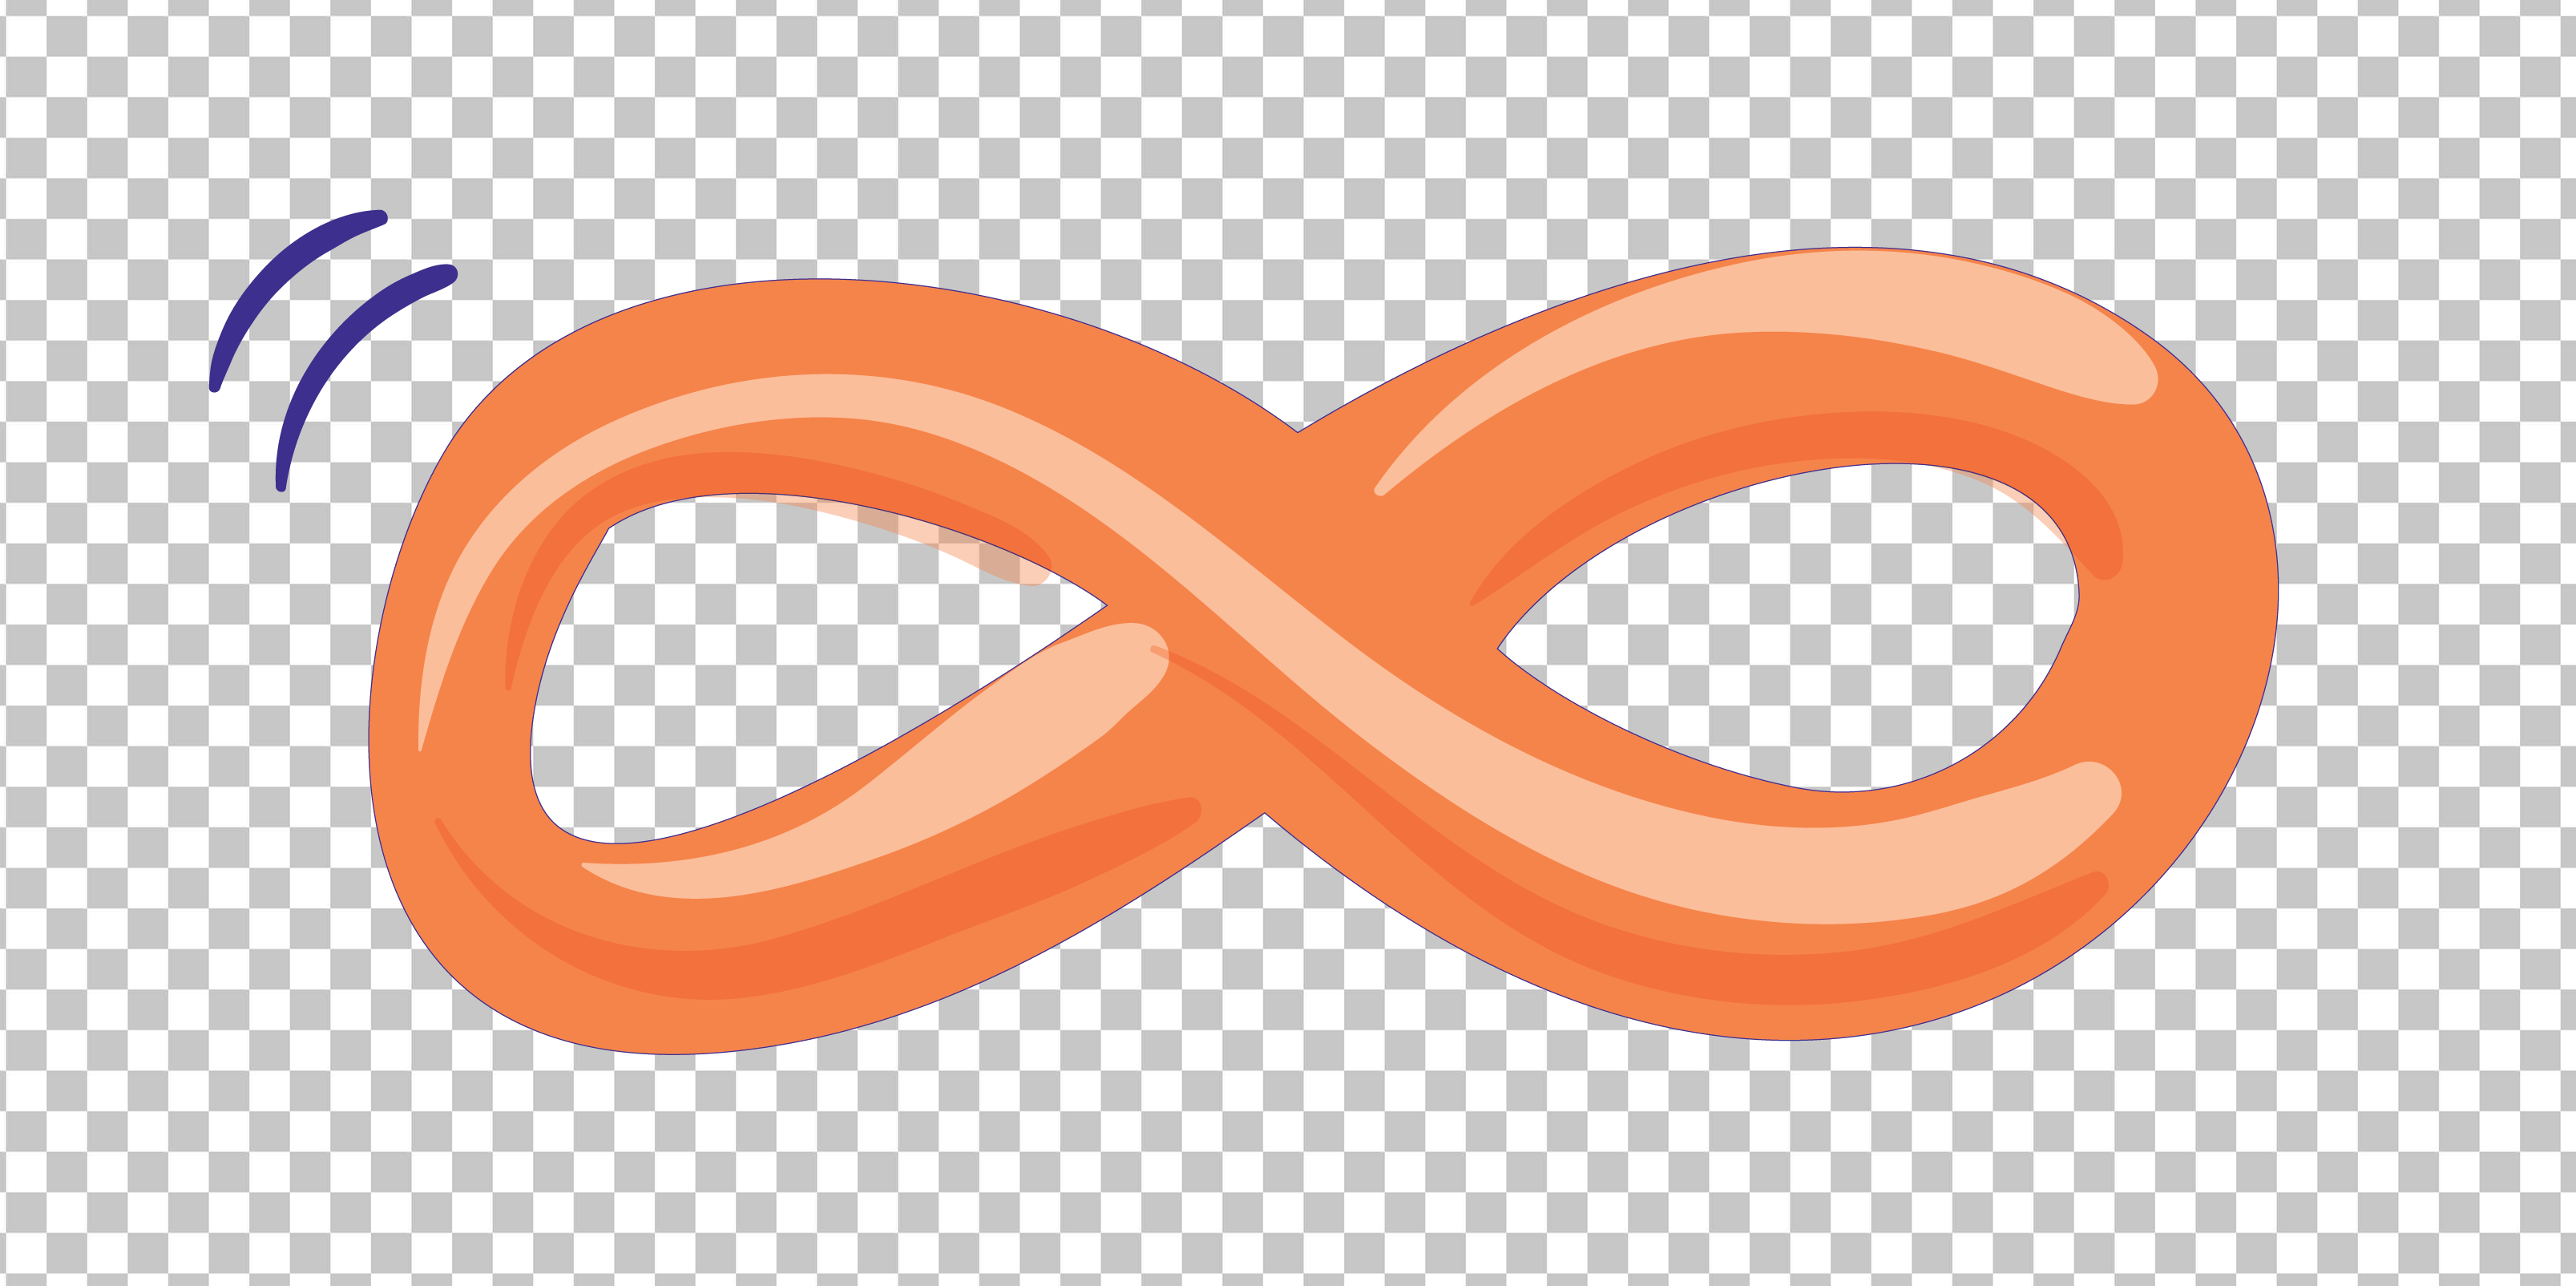 Orange Infinity Symbol PNG Image